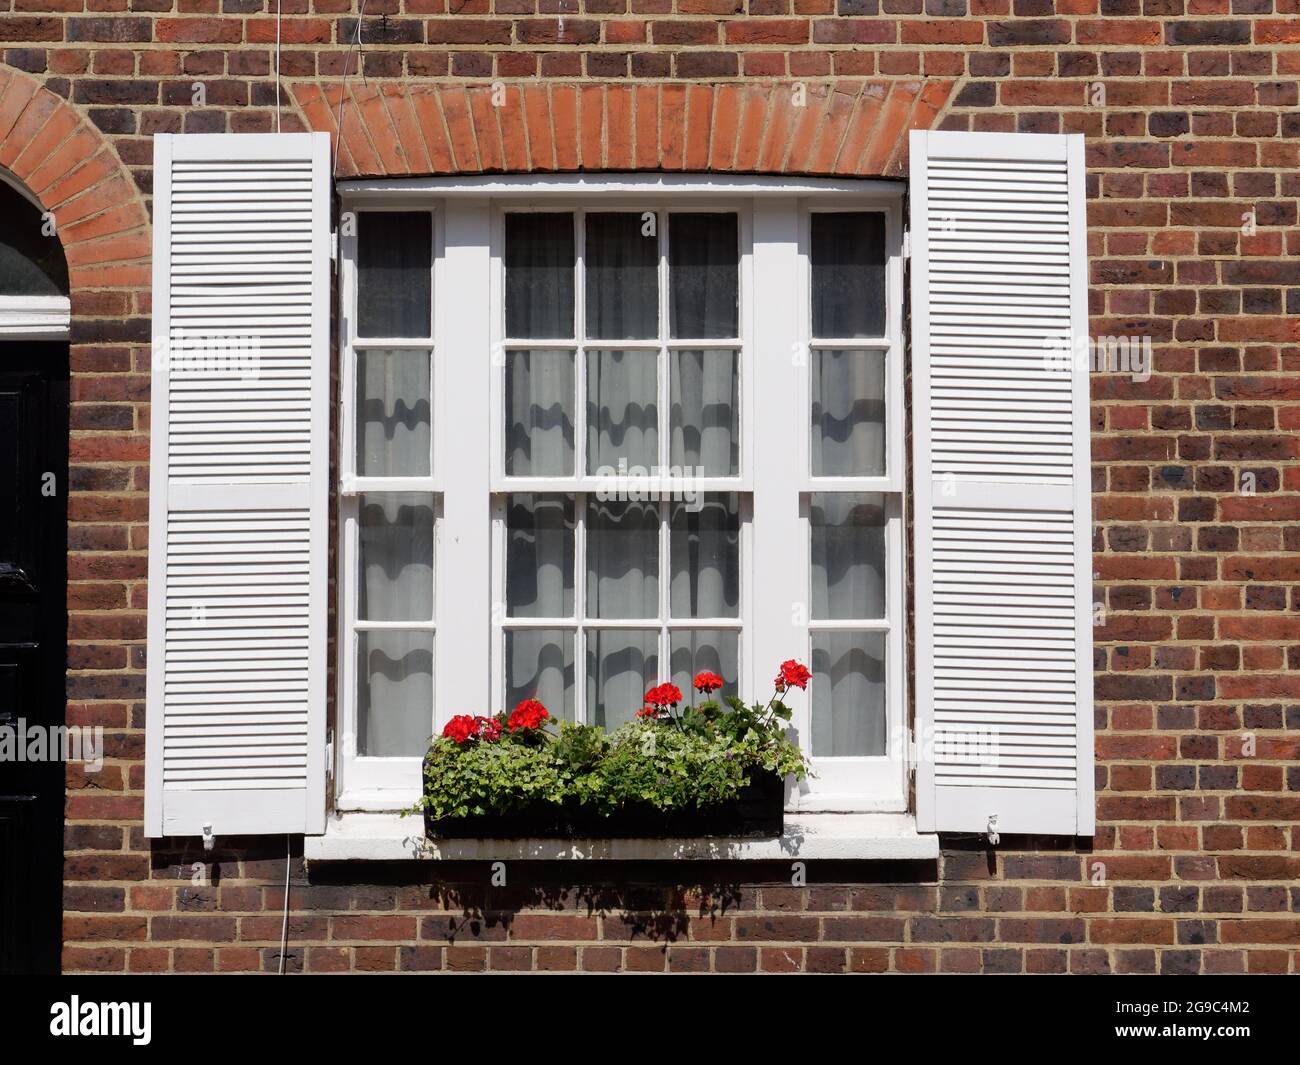 London, Greater London, England, Juni 12 2021: Fensterkasten voller Pflanzen und Blumen außerhalb eines Ziegelwohngrundstücks. Stockfoto